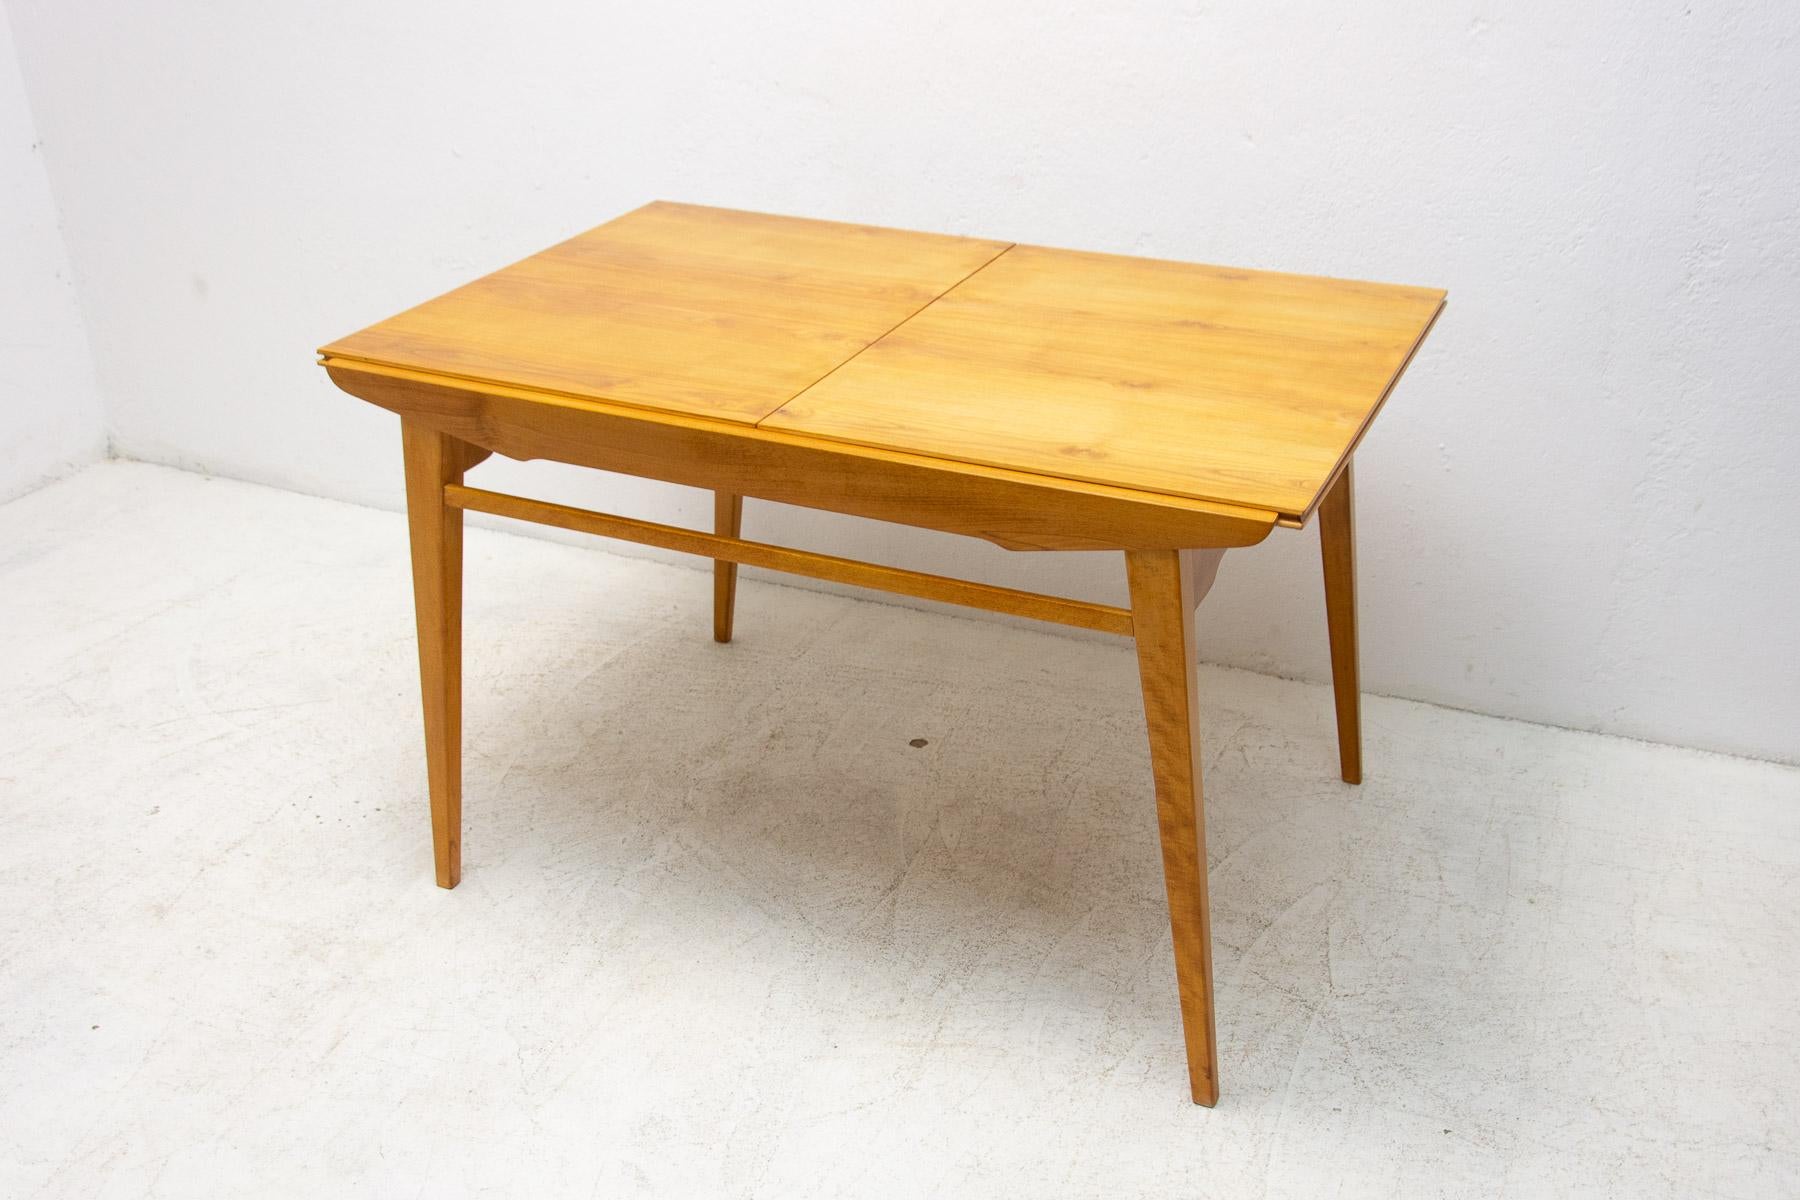 Cette table de salle à manger réglable a été conçue par Bohumil Landsman et fabriquée par Jitona Company dans l'ancienne Tchécoslovaquie dans les années 1970. Il est fabriqué en bois de frêne et de hêtre. La longueur est réglable de 108 cm à 140 cm.